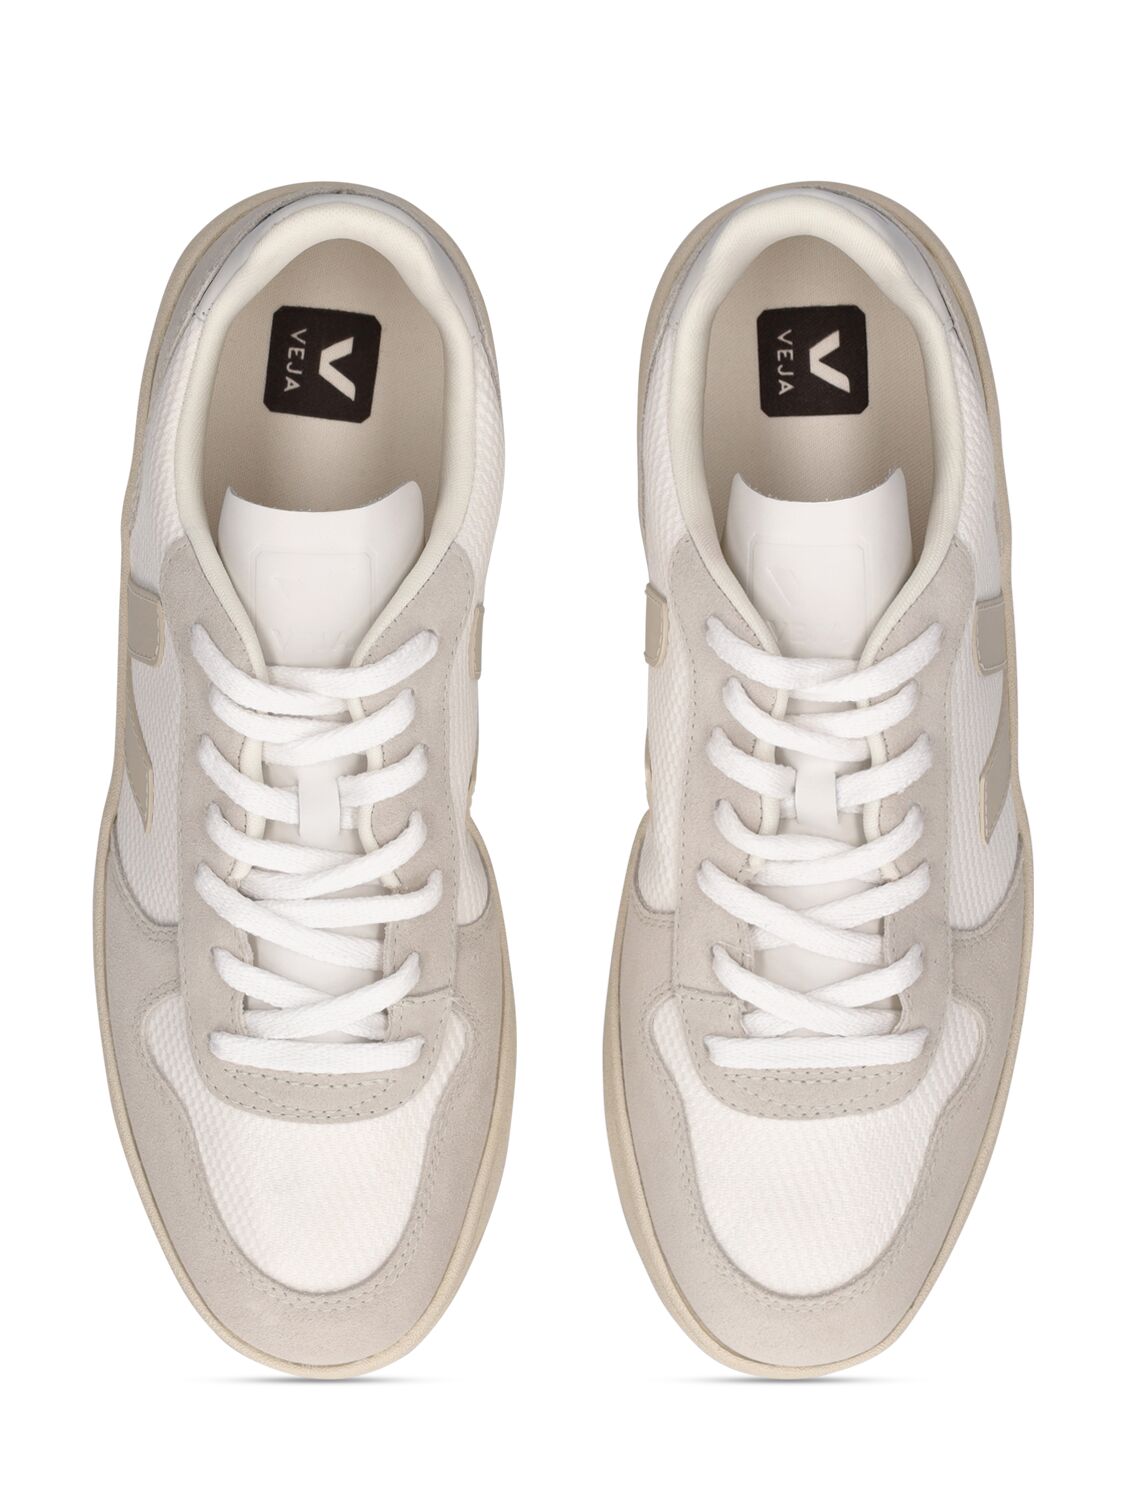 Shop Veja V-10 Sneakers In White,natural,p